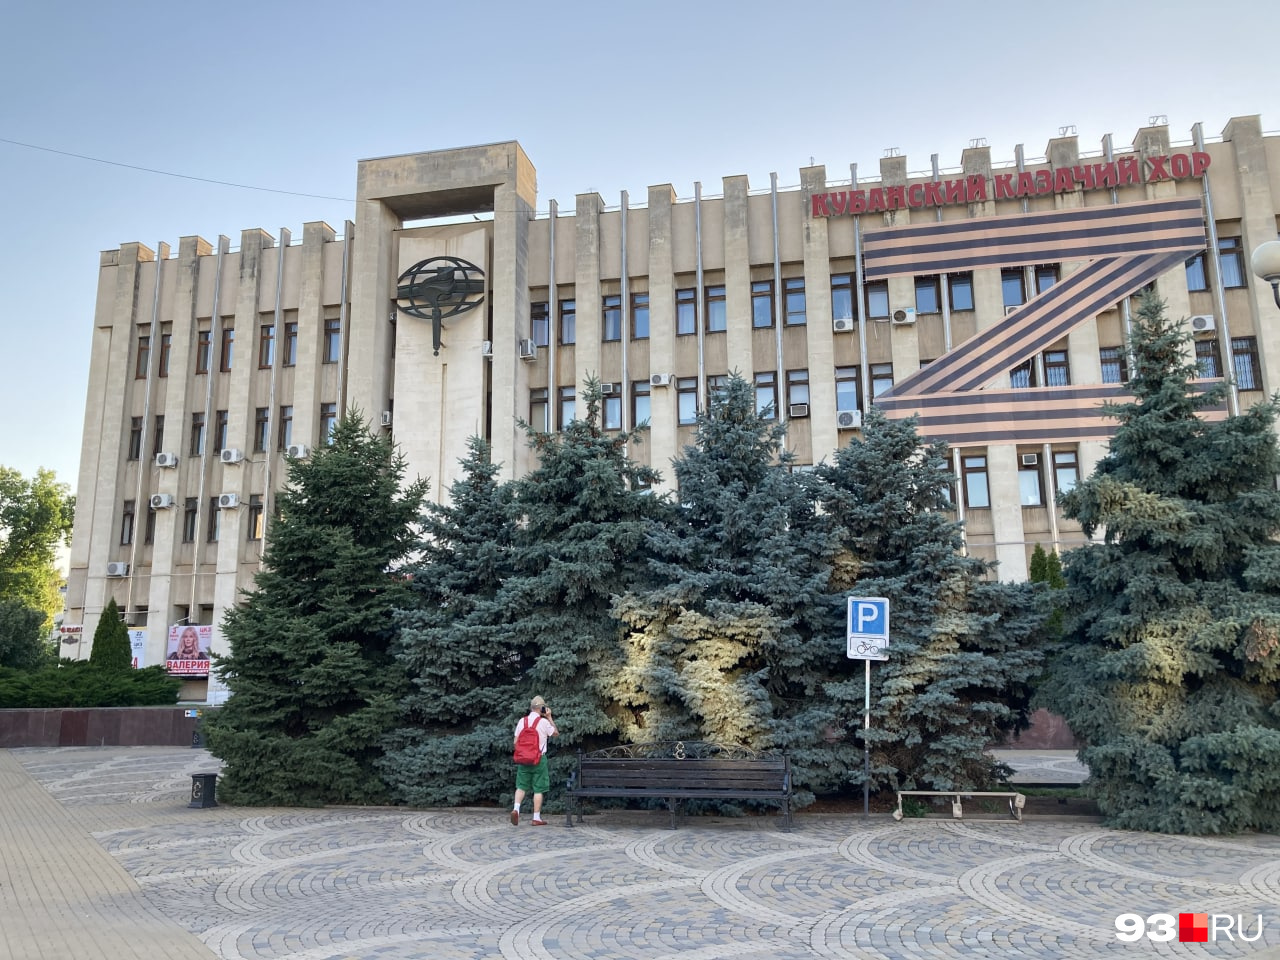 Дом политпросвещения был открыт в канун <nobr class="_">60-летия</nobr> советской власти — в 1978 году. Здание занимает площадь свыше 5 тысяч квадратных метров